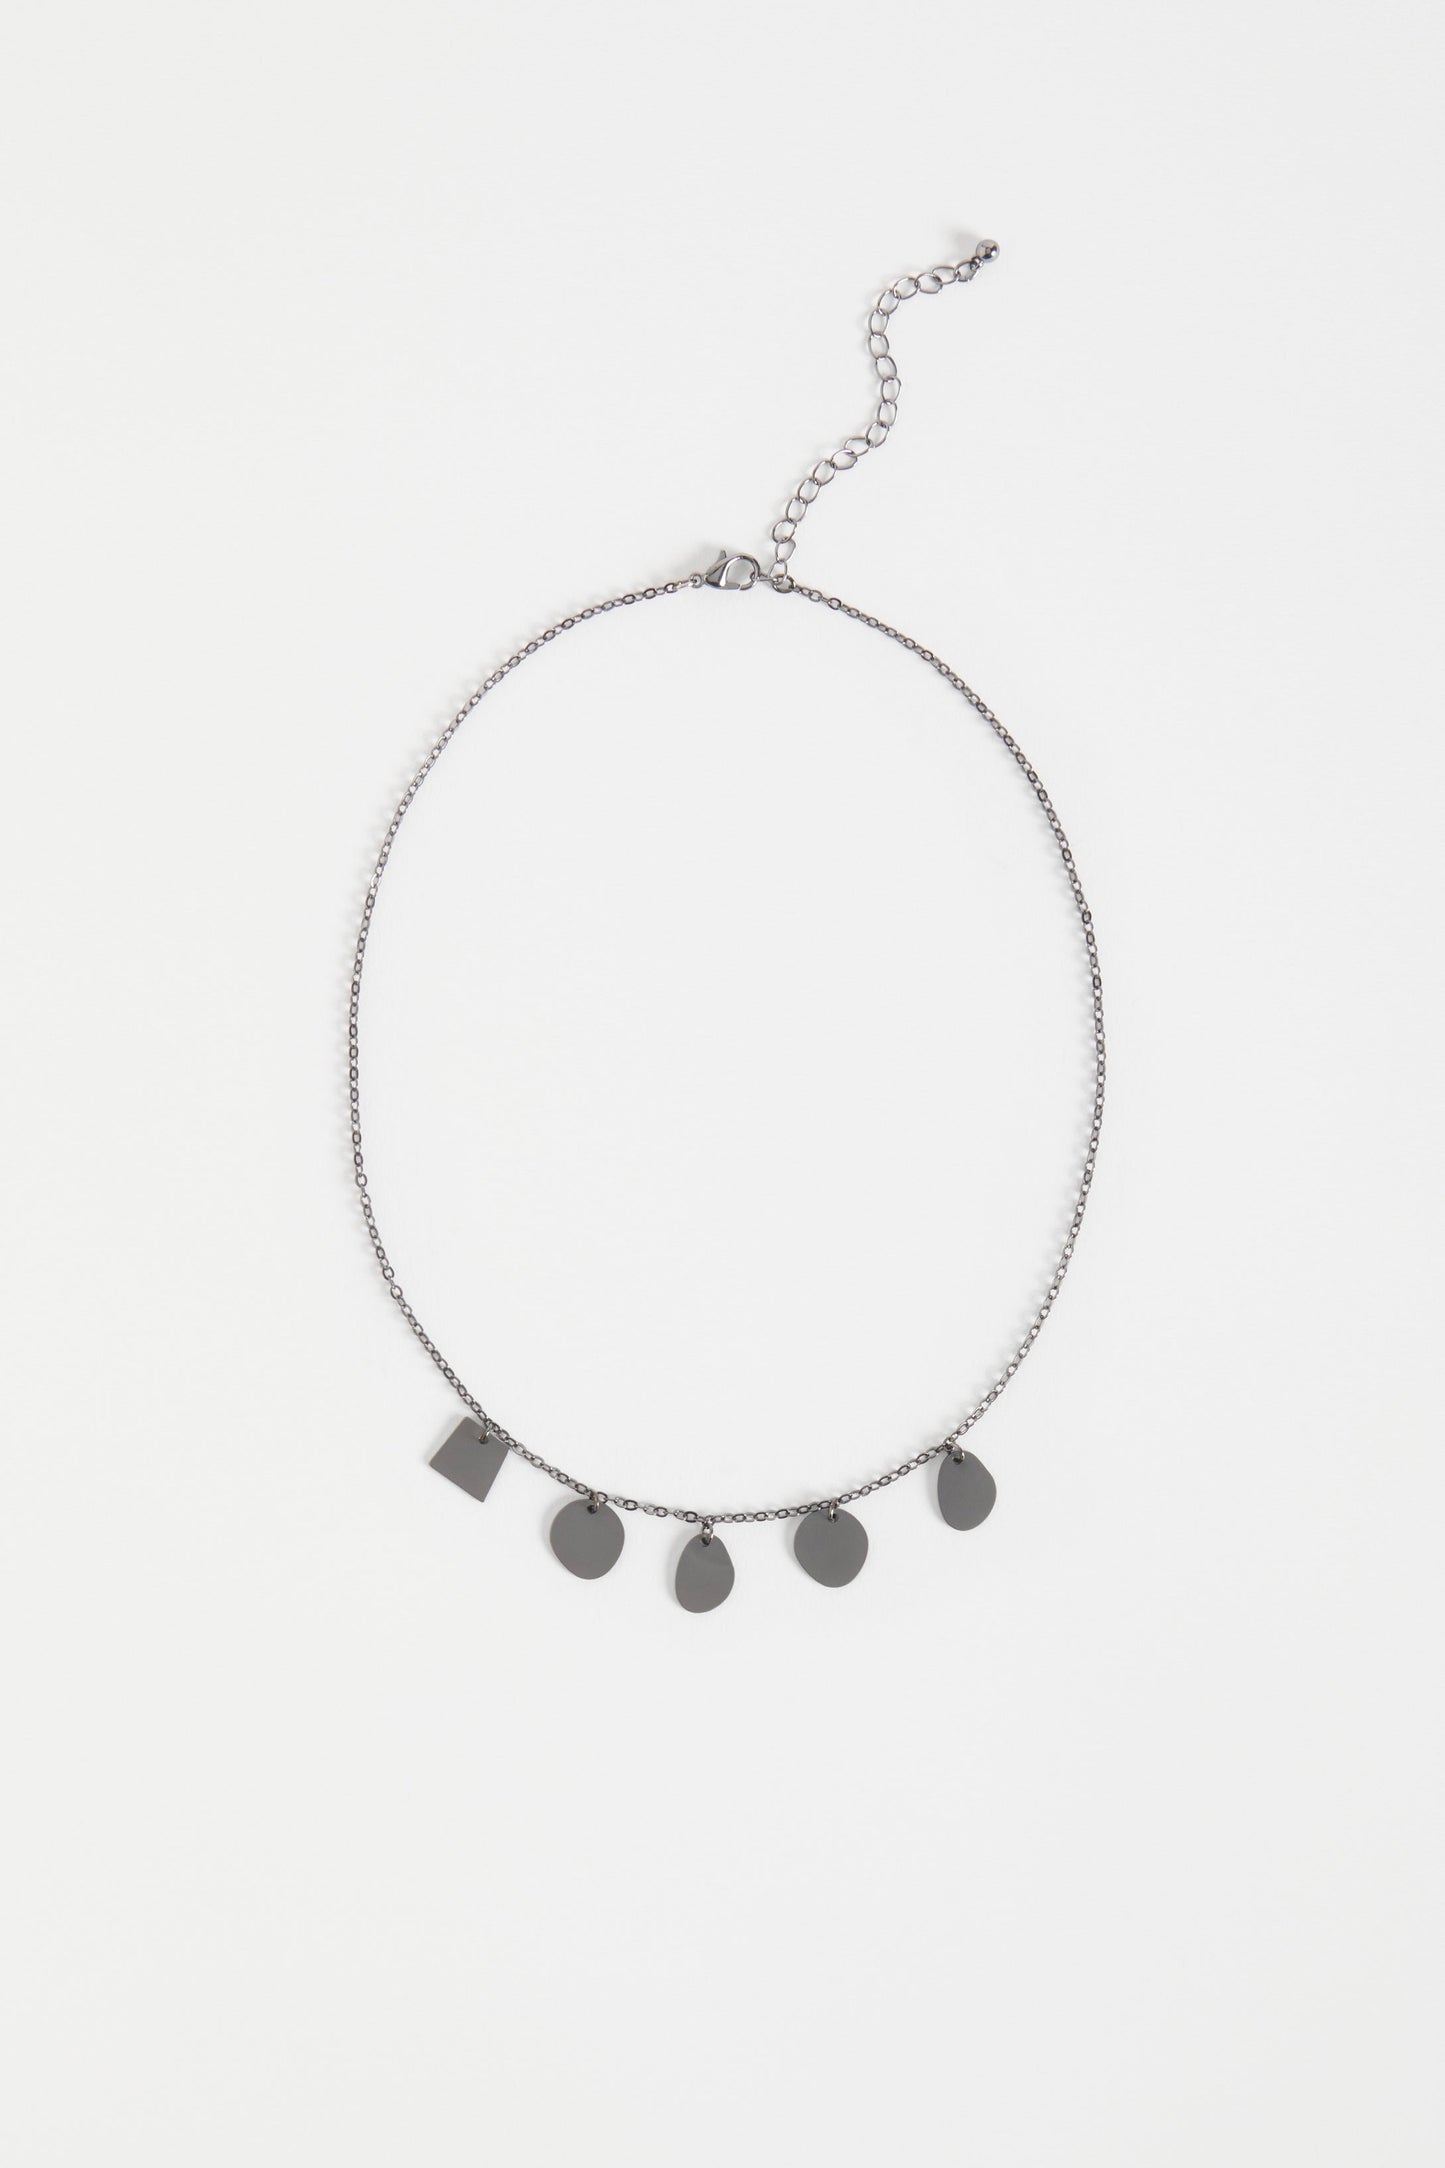 Sammi Fine Chain and small disc pendants Necklace | GUNMETAL